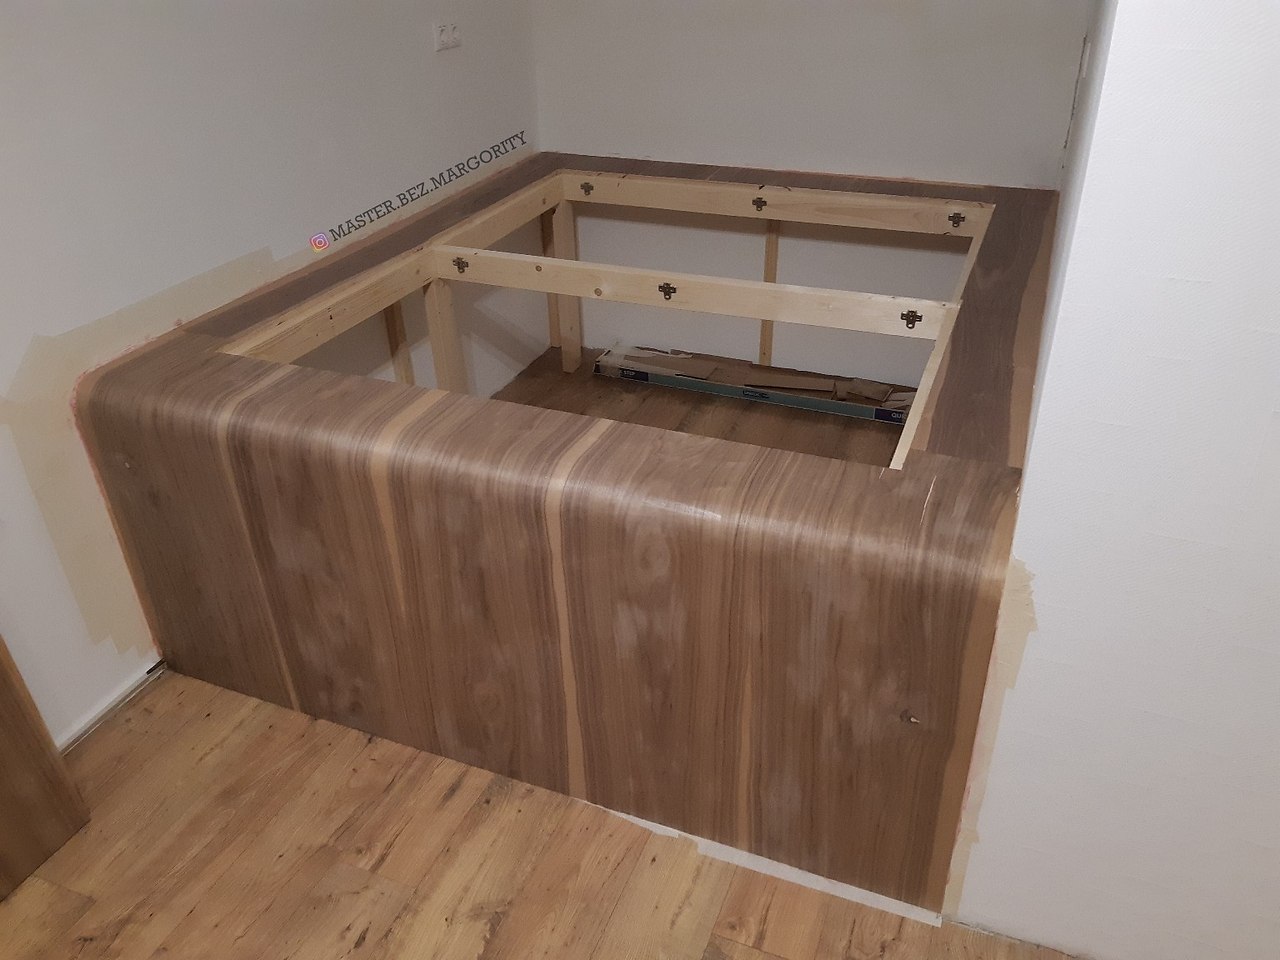 деревянный подиум под кровать